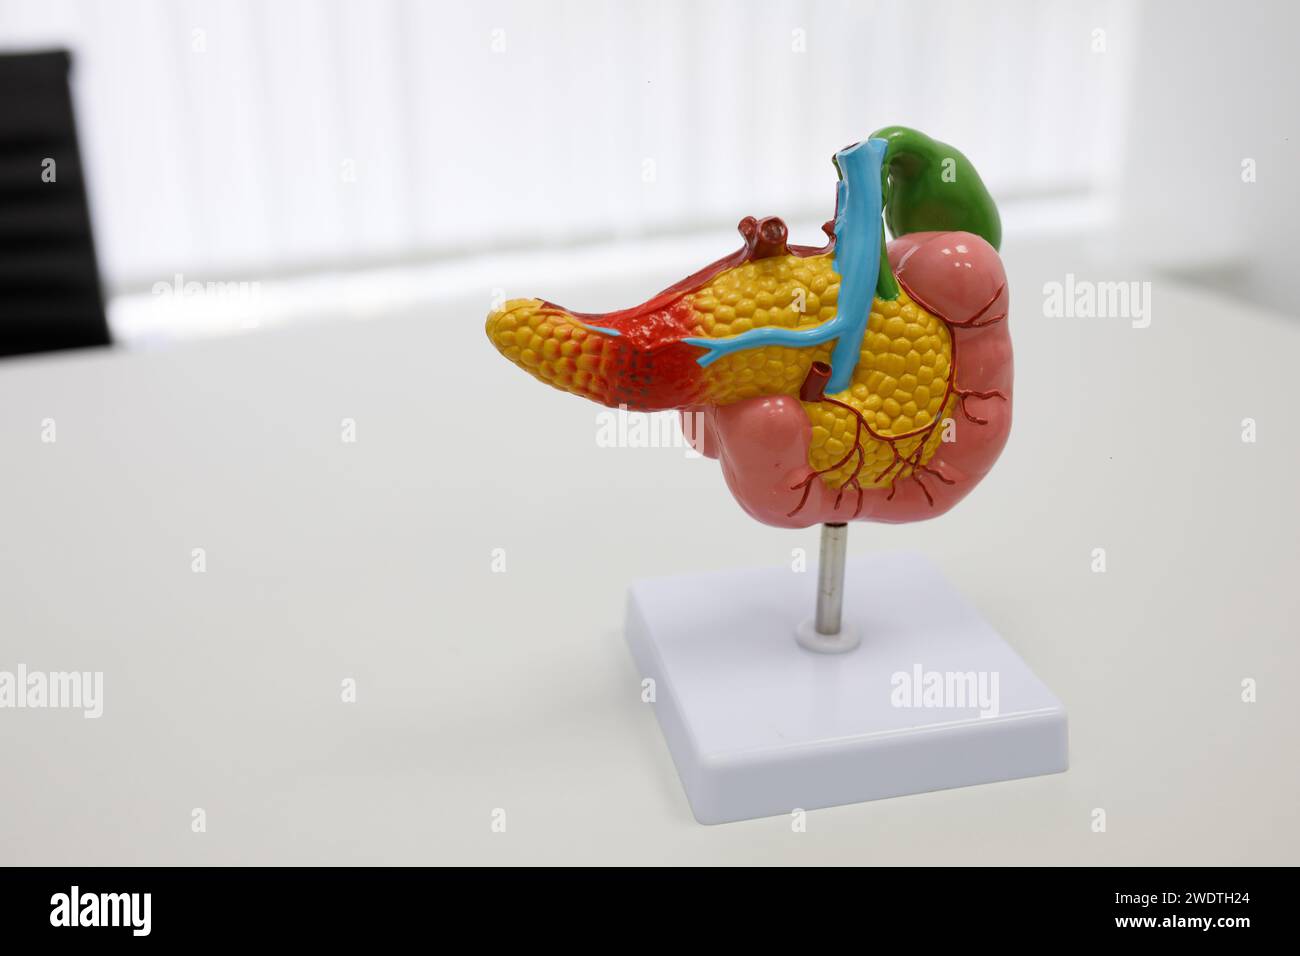 illustrazioni anatomiche di organi umani. Foto di alta qualità Foto Stock